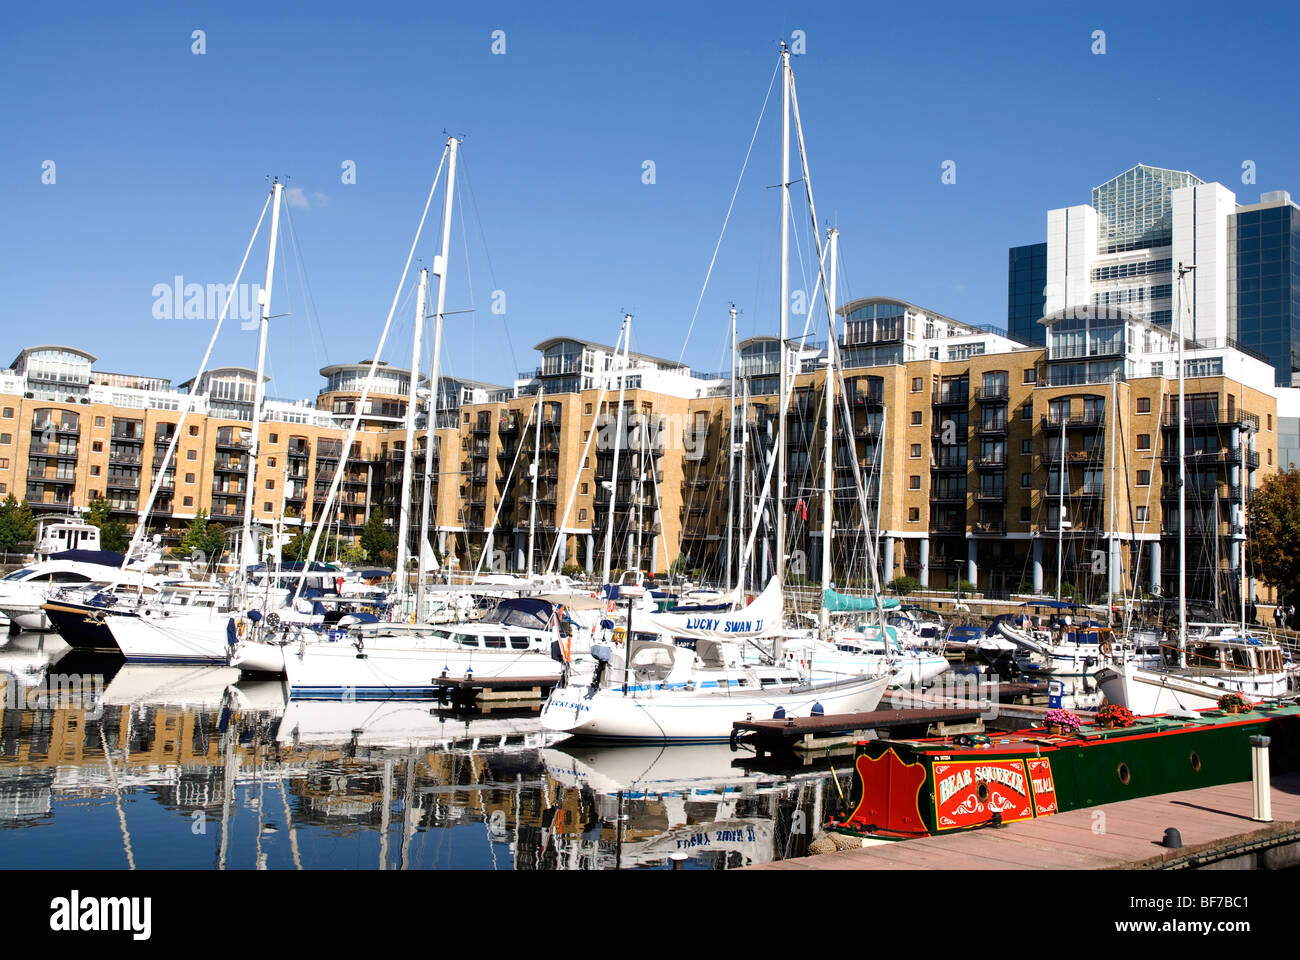 Boats in the marina at St Katharines Dock London E1 Stock Photo